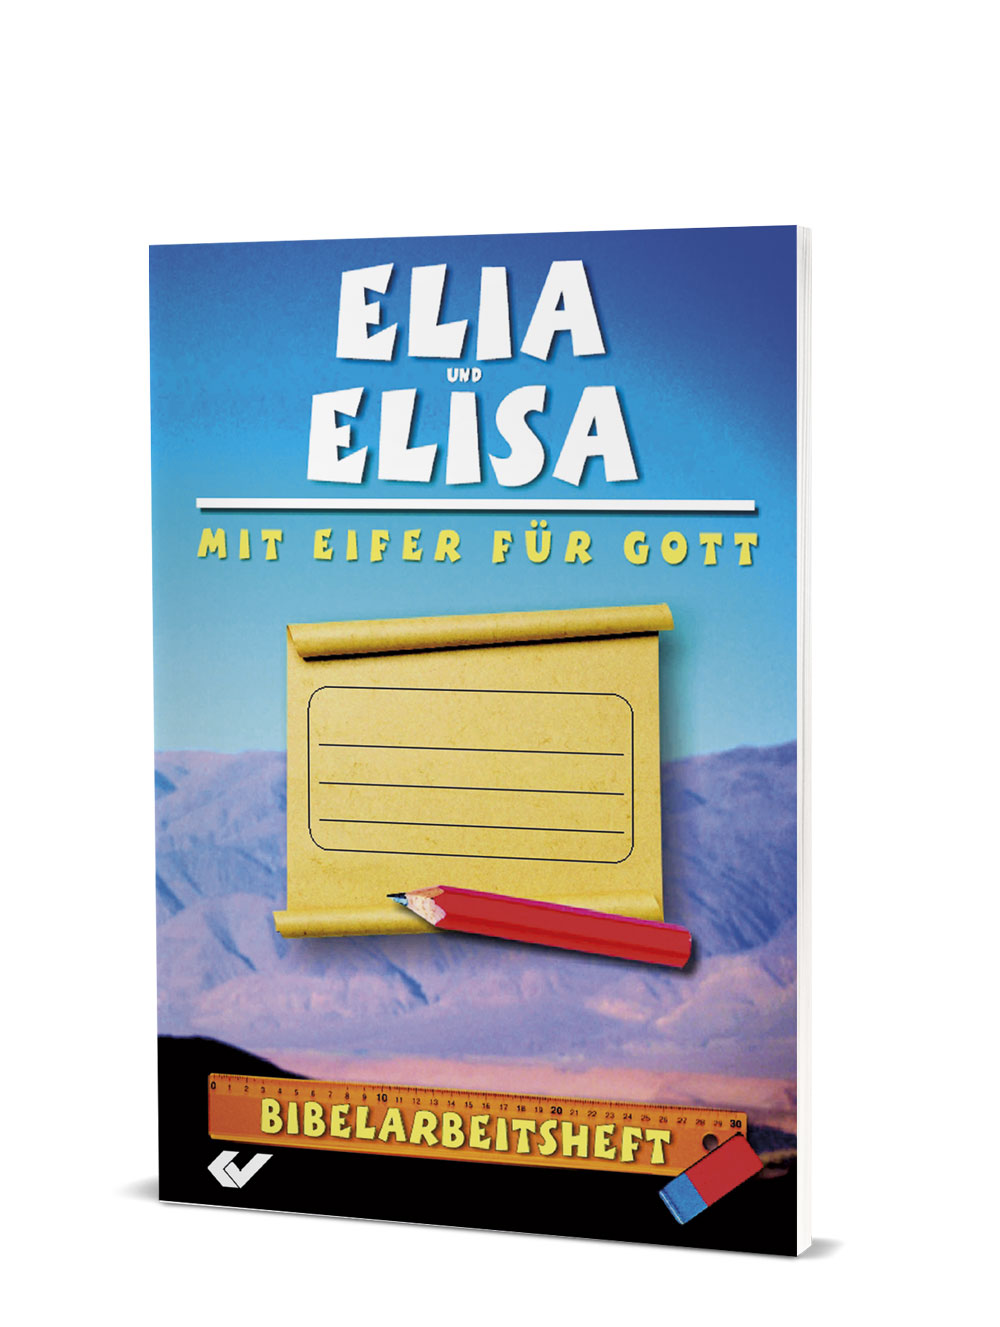 Ralf Kausemann (Hg.): Bibelarbeitsheft - Elia und Elisa - Mit Eifer für Gott